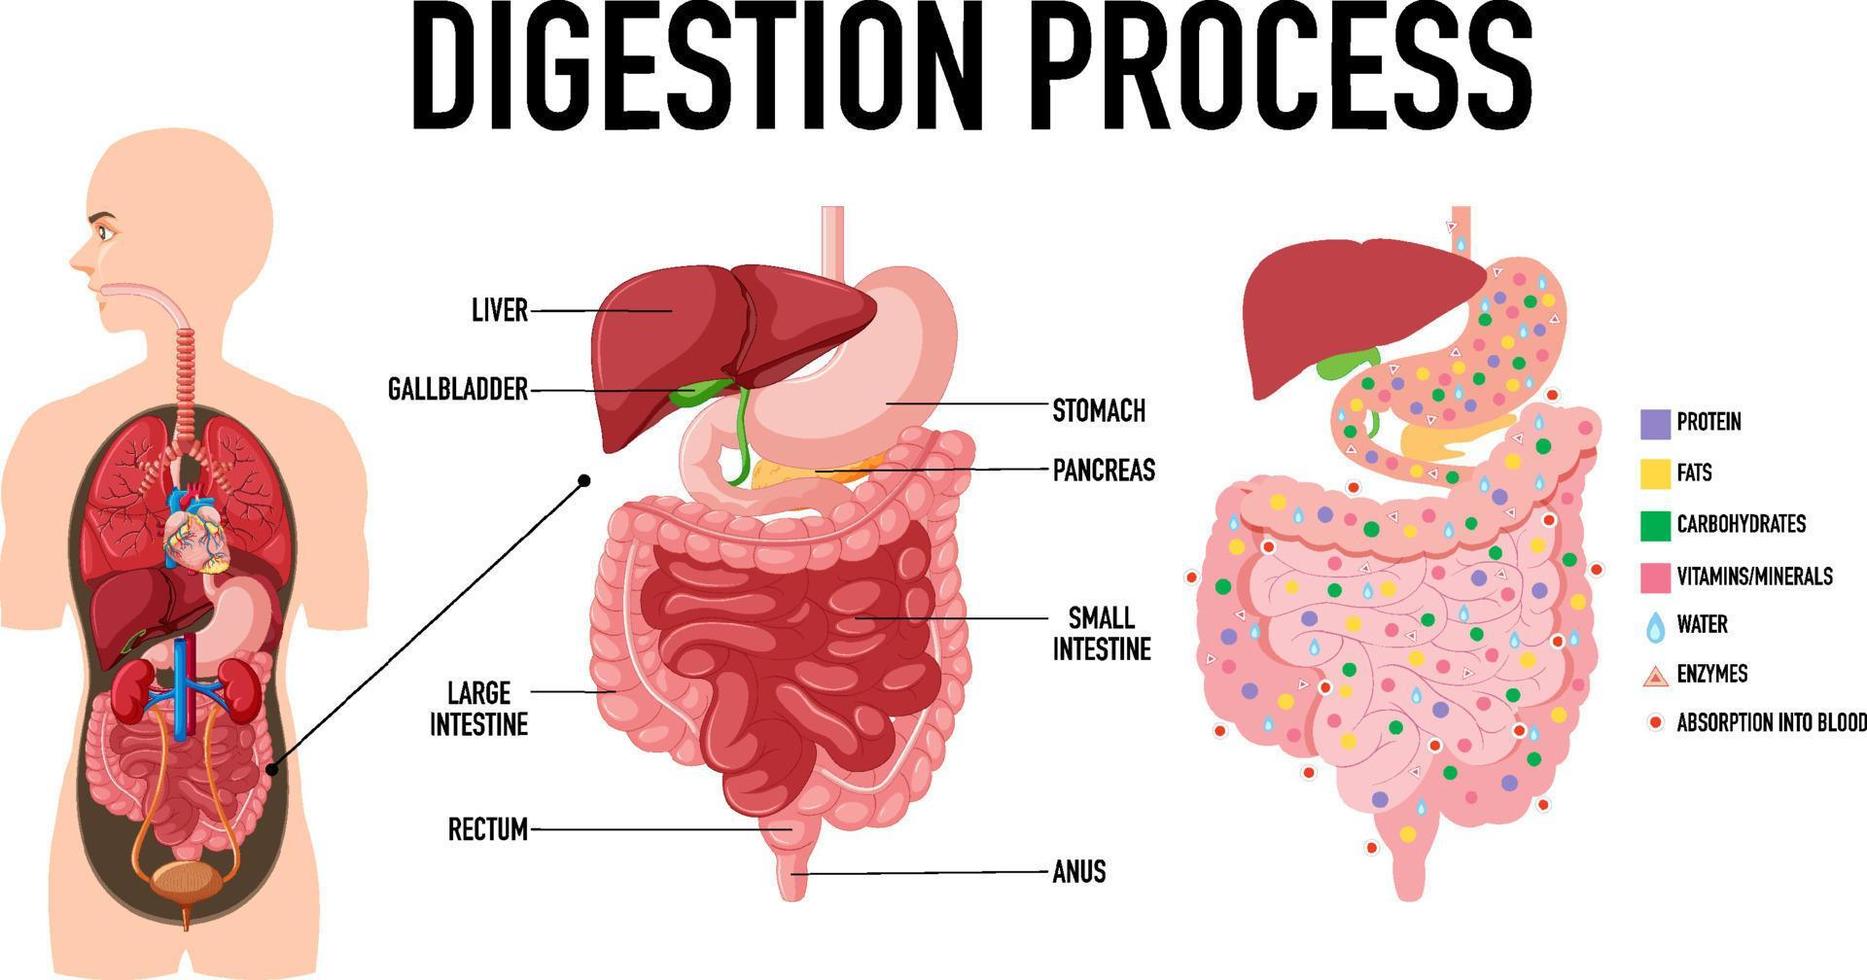 diagrama que muestra el proceso de digestión vector